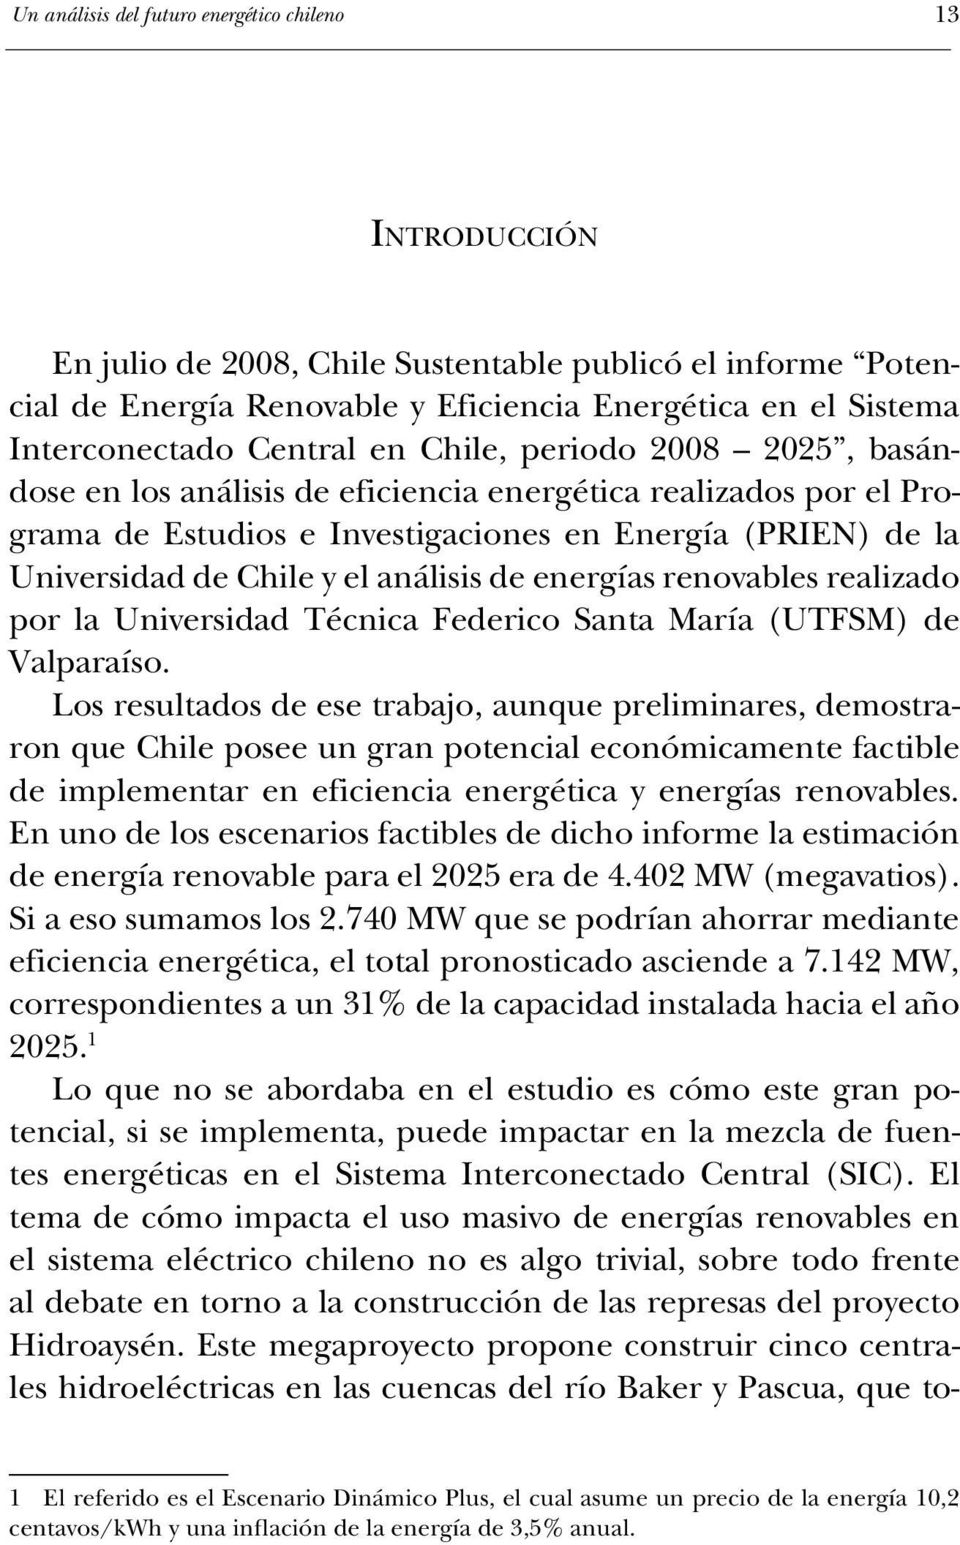 análisis de energías renovables realizado por la Universidad Técnica Federico Santa María (UTFSM) de Valparaíso.